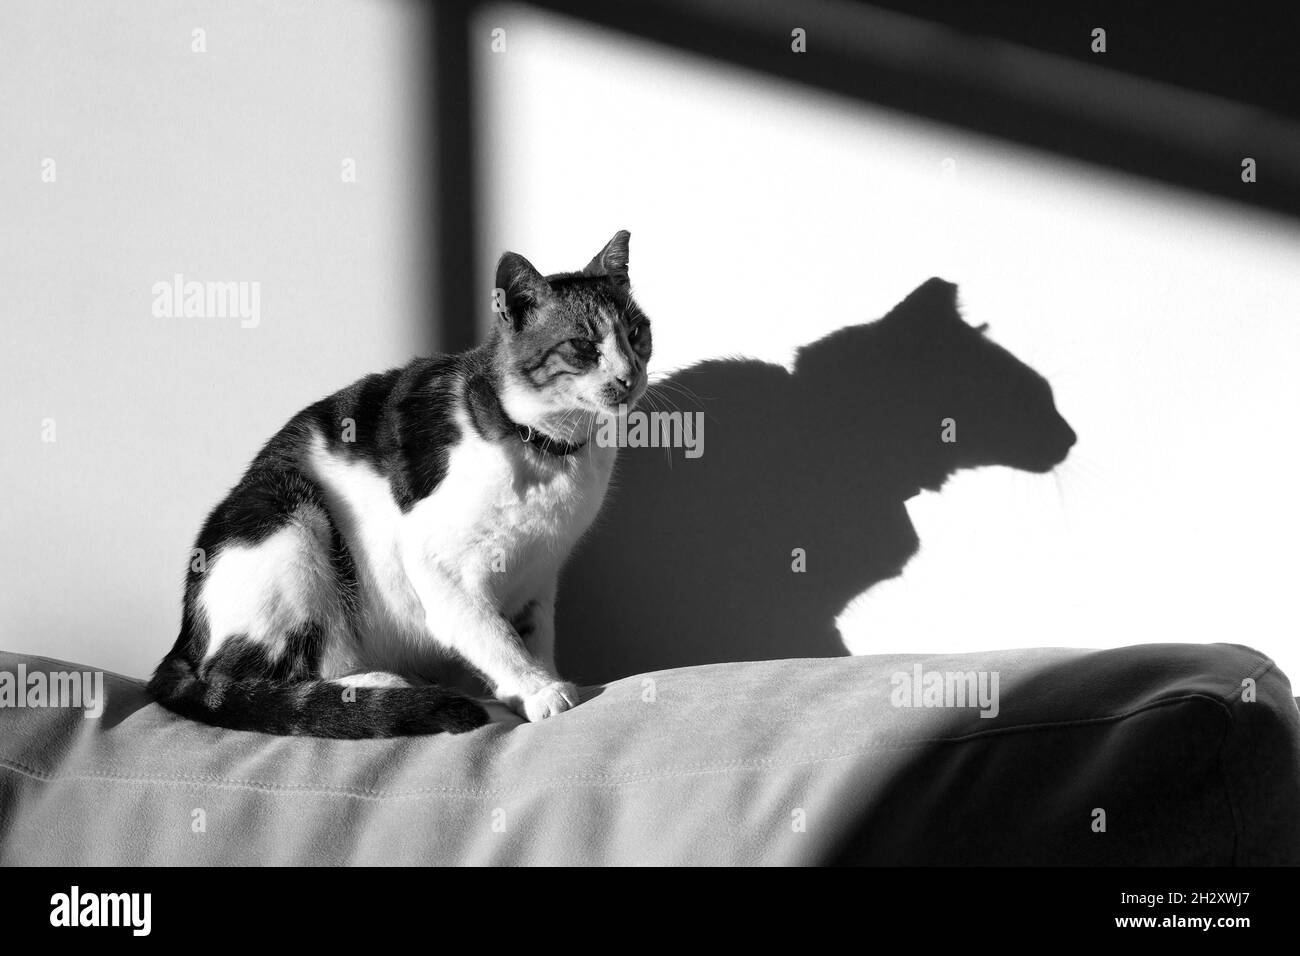 Un chat tabby assis sur un canapé au soleil, son ombre sur le mur adjacent. Banque D'Images